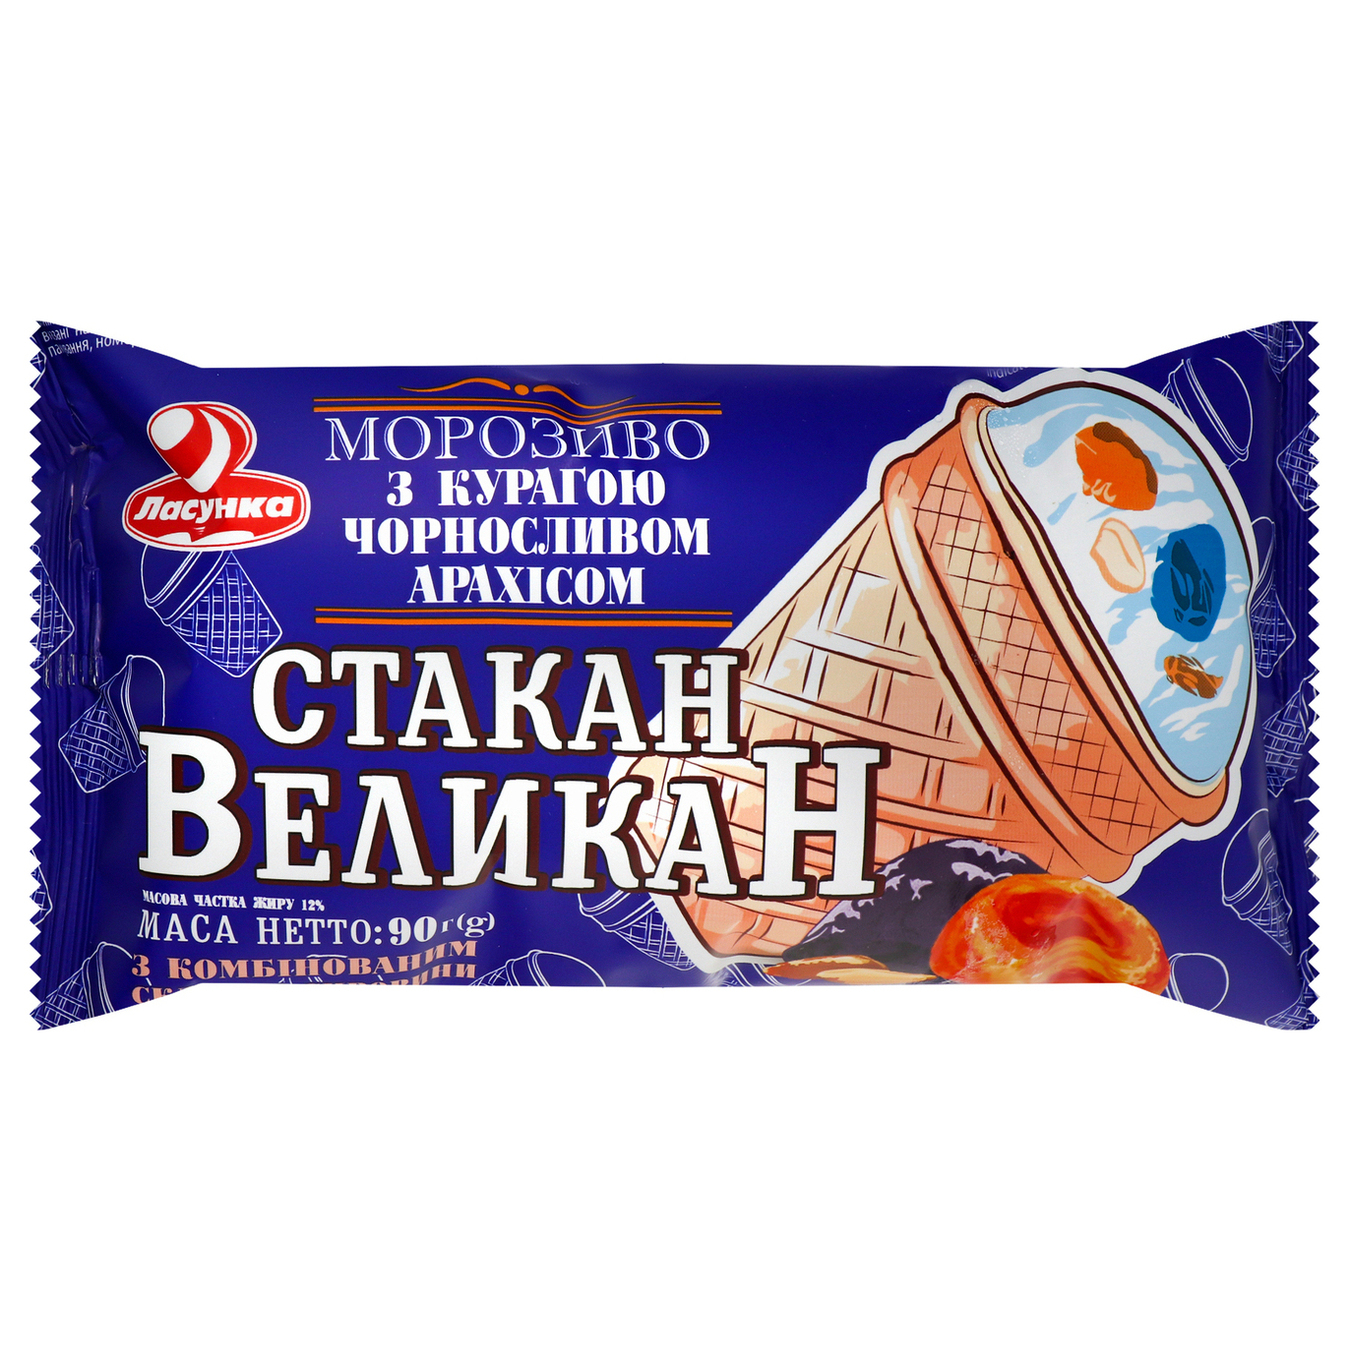 Морозиво Ласунка Стакан Великан з курагою, чорносливом, арахісом 12% 90г